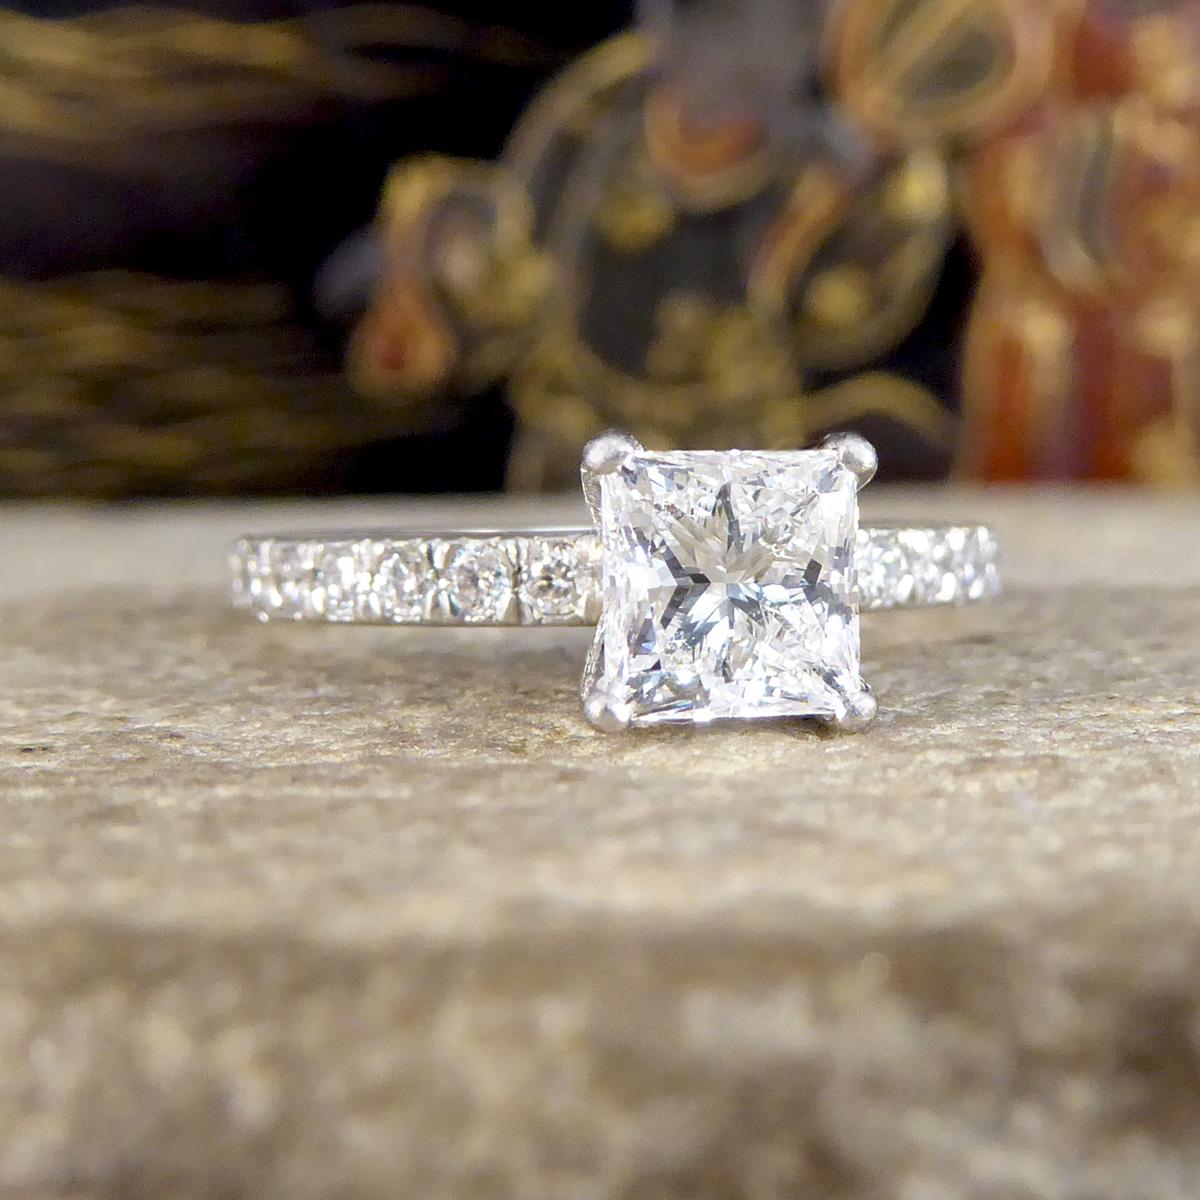 Solch ein schöner moderner Verlobungsring, der eine schöne klare  und ein strahlender Diamant im Prinzessinnenschliff mit einem Gewicht von 1,01ct. Der Diamant selbst ist mit einer GIA-Nummer versehen, die besagt, dass er 1,01 Pfund wiegt und eine